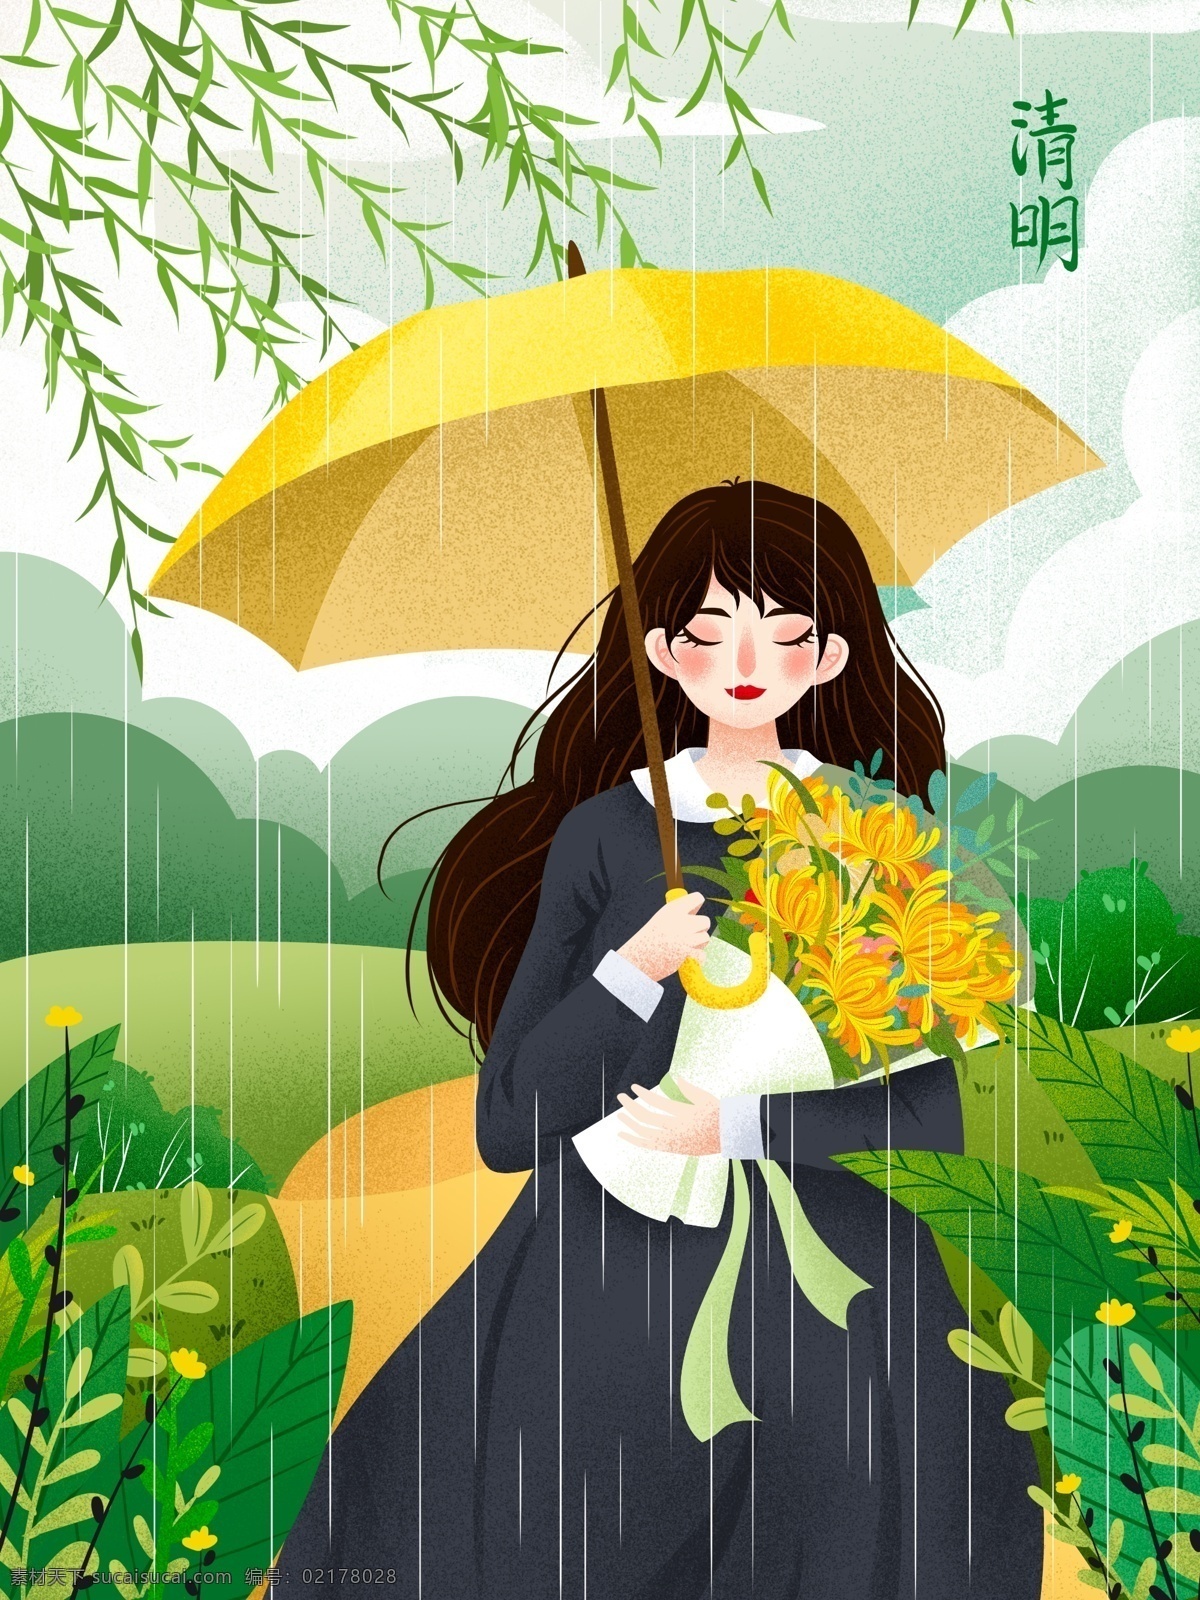 清明 时节 雨 纷纷 女孩 清明节 上山 扫墓 插画 下雨 节气 雨伞 植物 菊花 清明插画